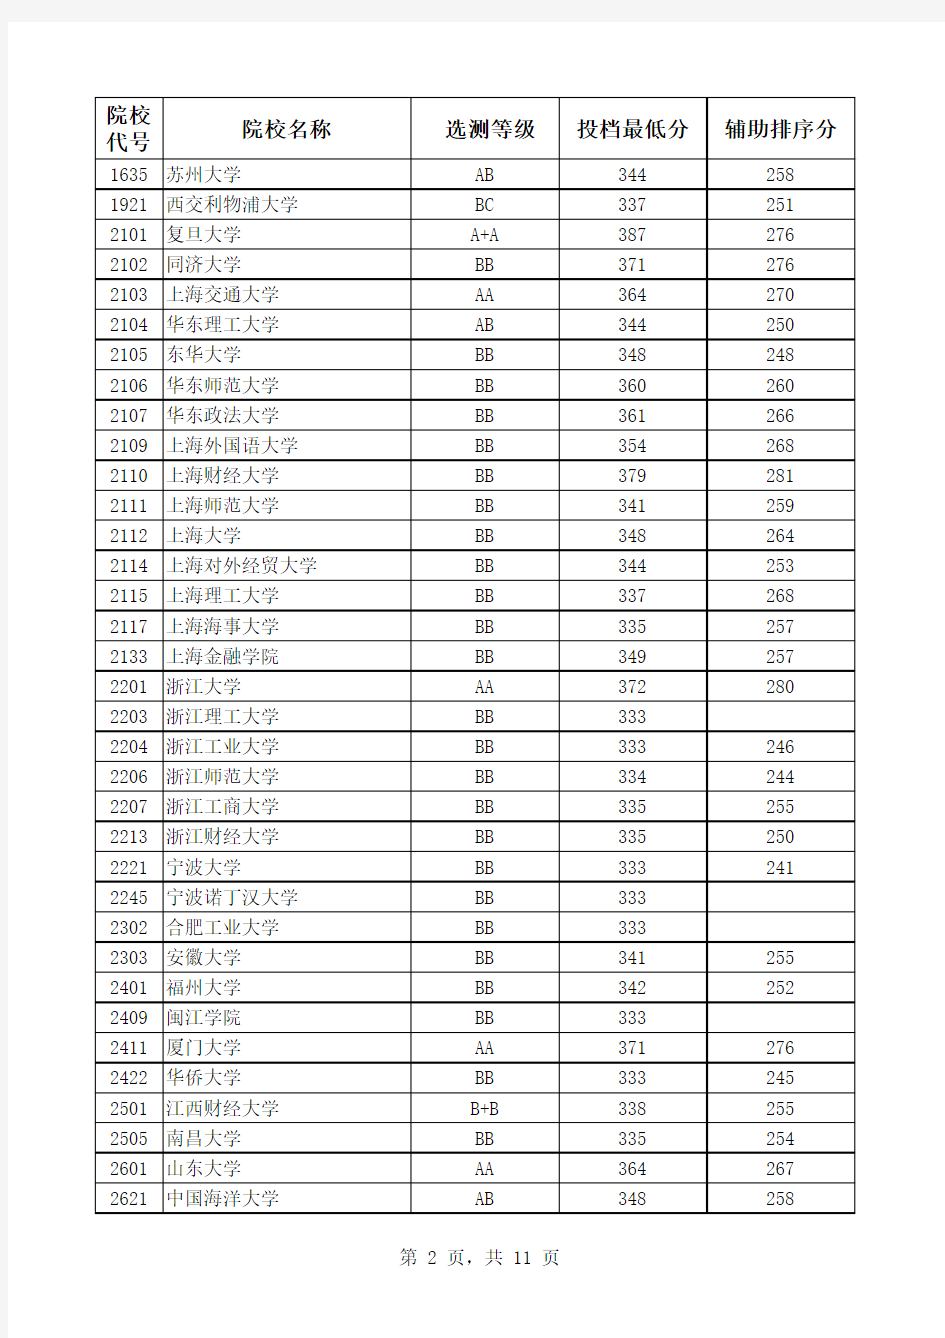 2014年江苏高考一本高校录取分数线